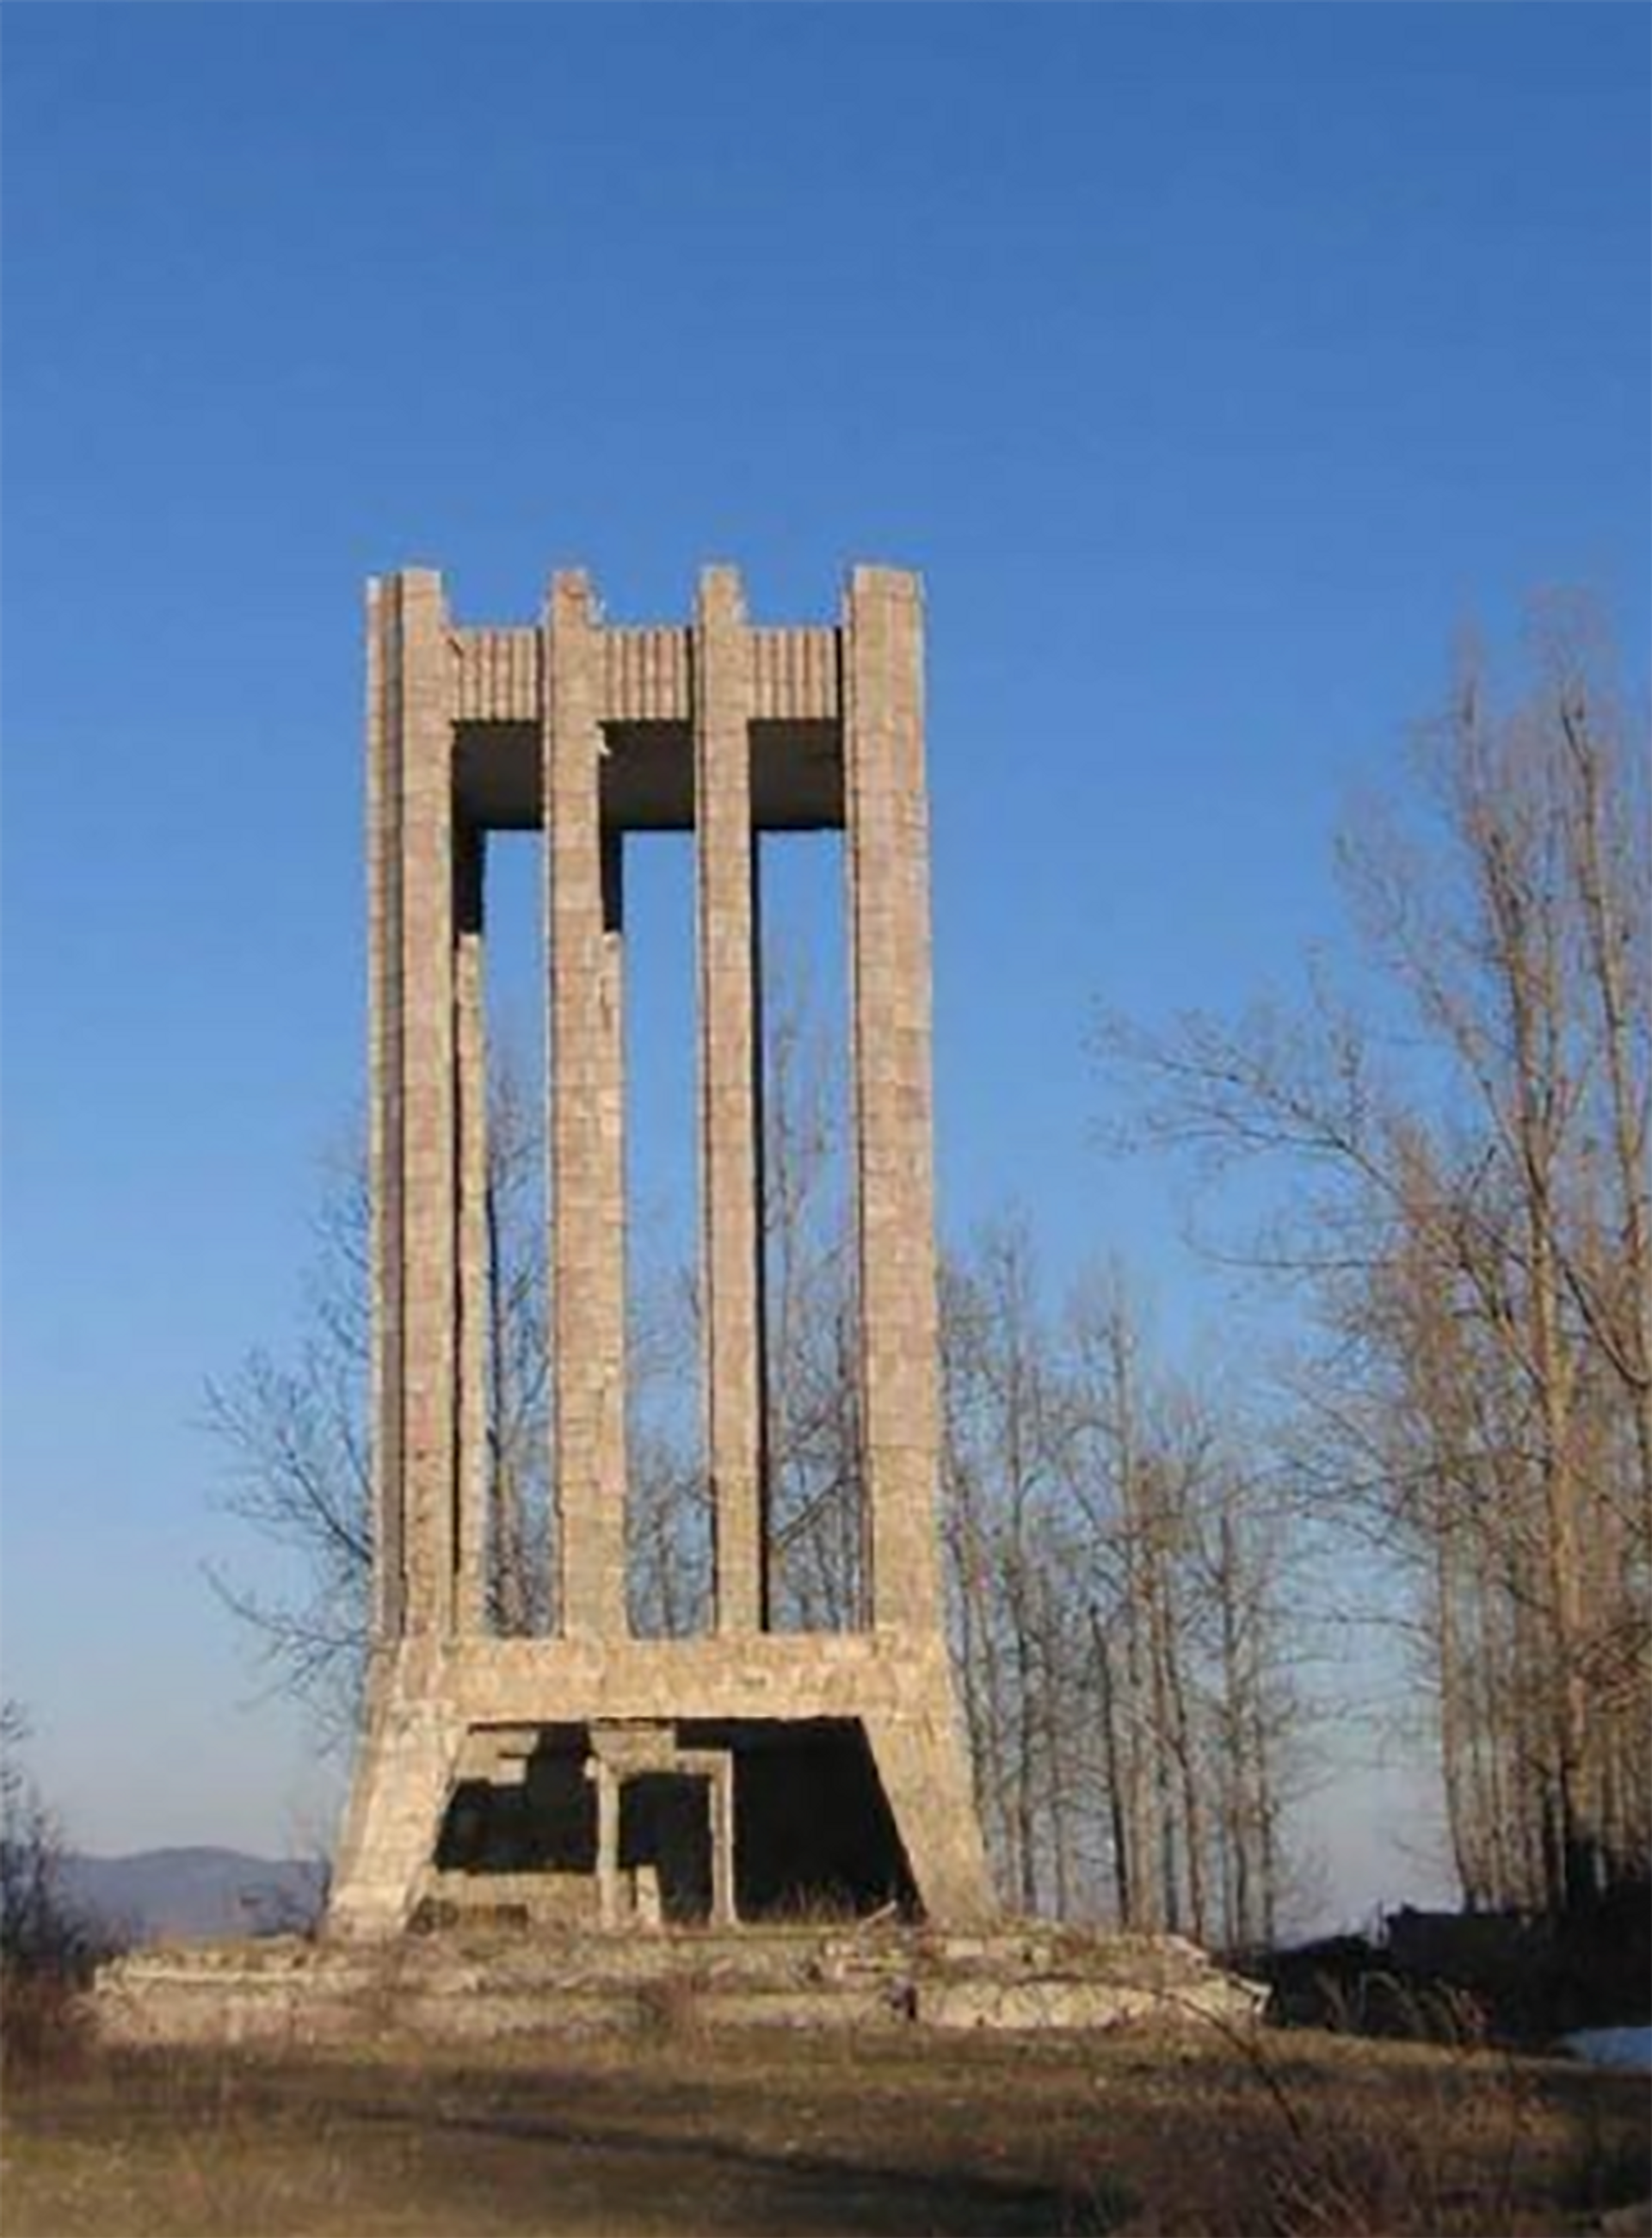 Руины мавзолея, 2012 год. - Sputnik Азербайджан, 1920, 01.10.2021